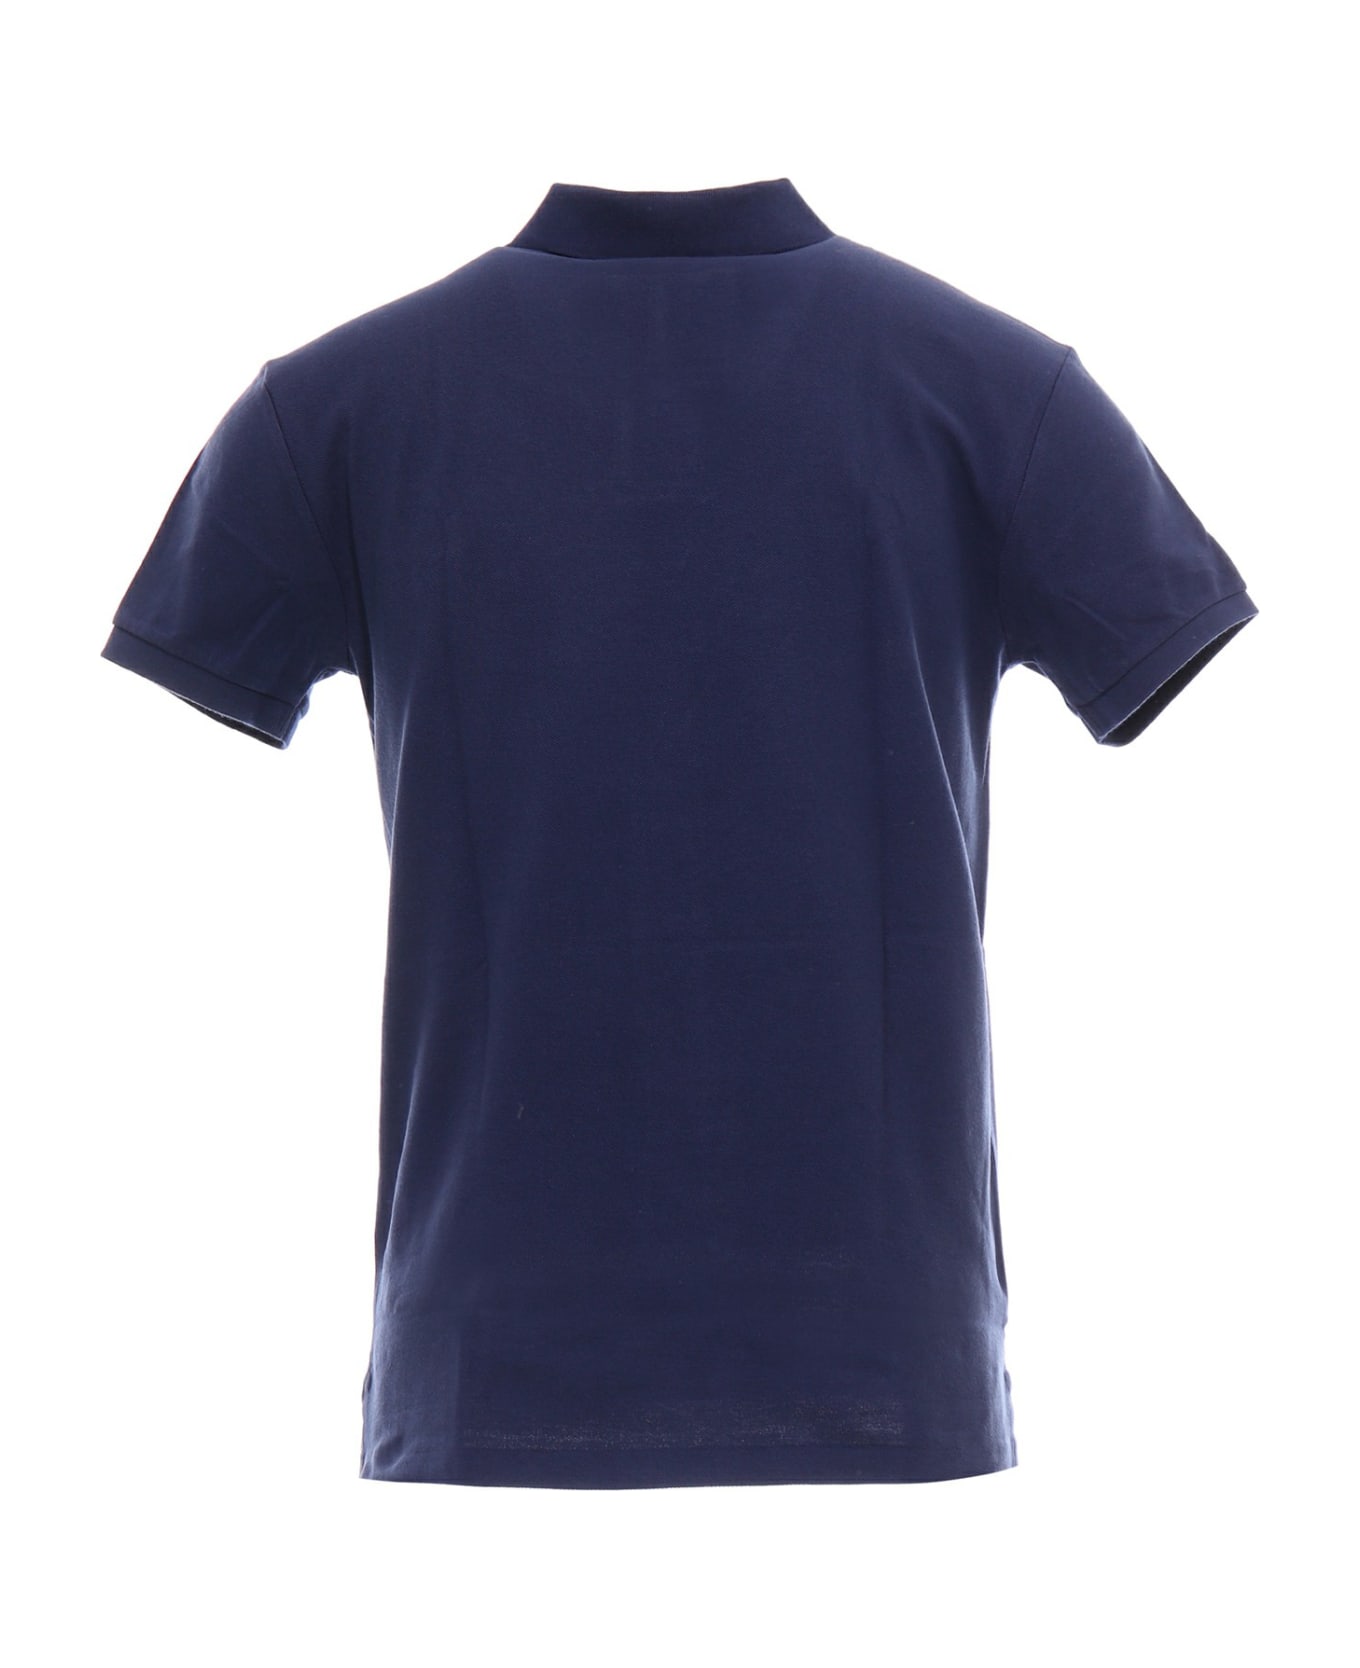 Polo Ralph Lauren Polo Shirt - Newport navy ポロシャツ